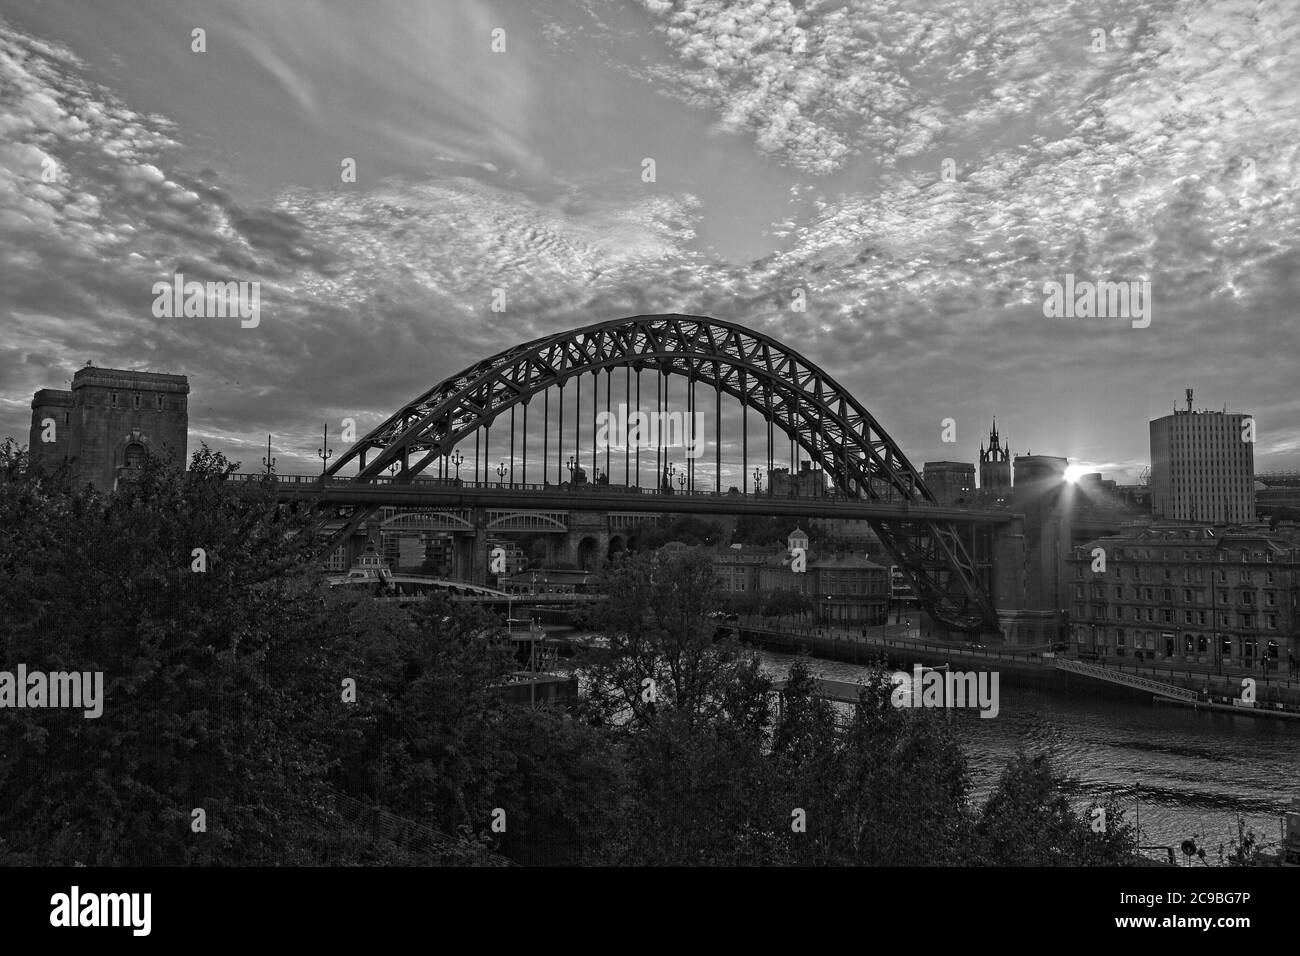 Der ikonische Bogen der Tyne Bridge und Kai in Newcastle, Tyne und tragen bei Sonnenuntergang von der Gateshead Seite des Flusses Tyne aufgenommen. Stockfoto